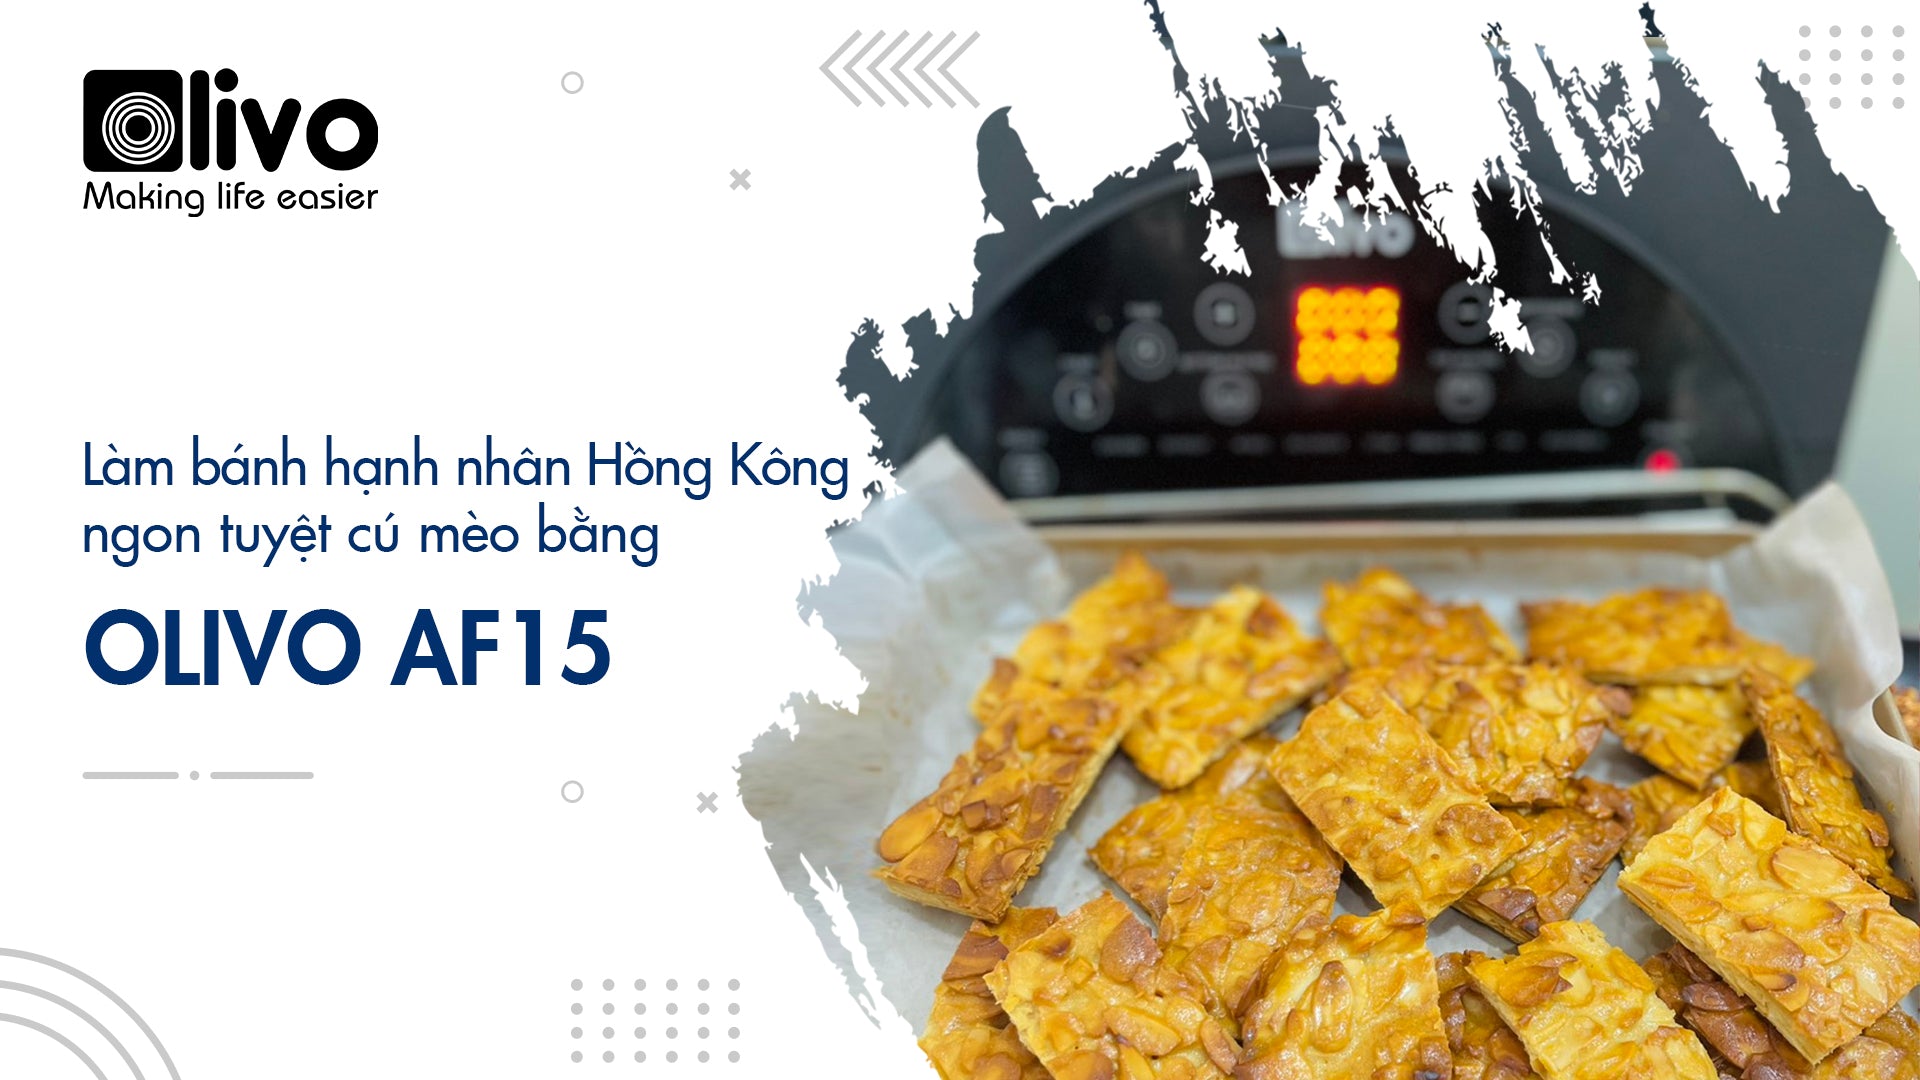 Cùng OLIVO AF15 làm bánh hạnh nhân Hồng Kông ngon tuyệt đón Tết